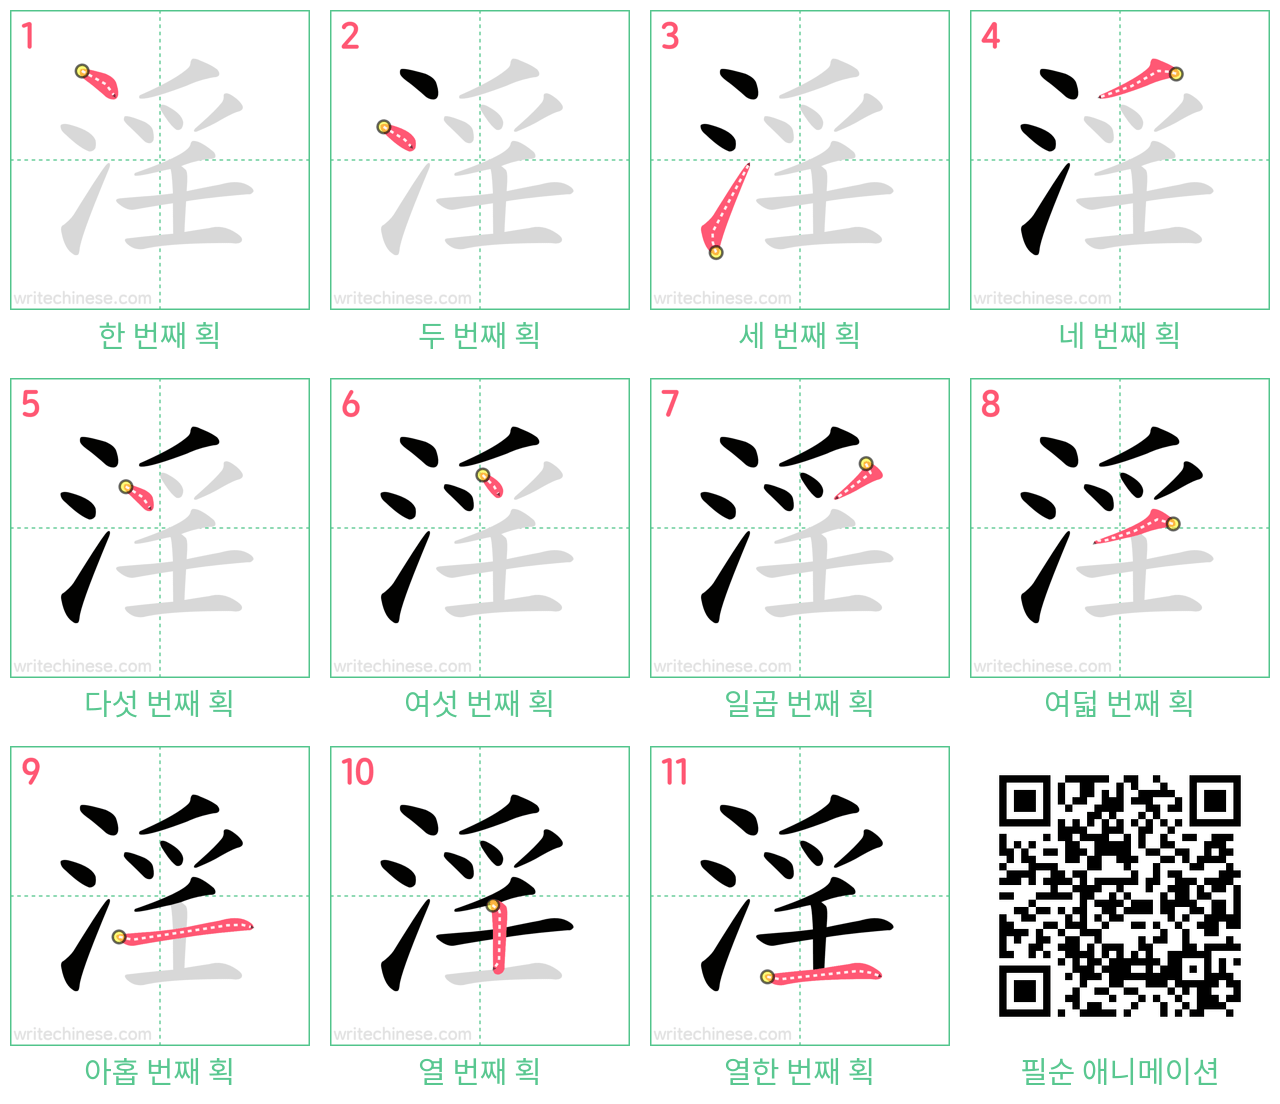 淫 step-by-step stroke order diagrams